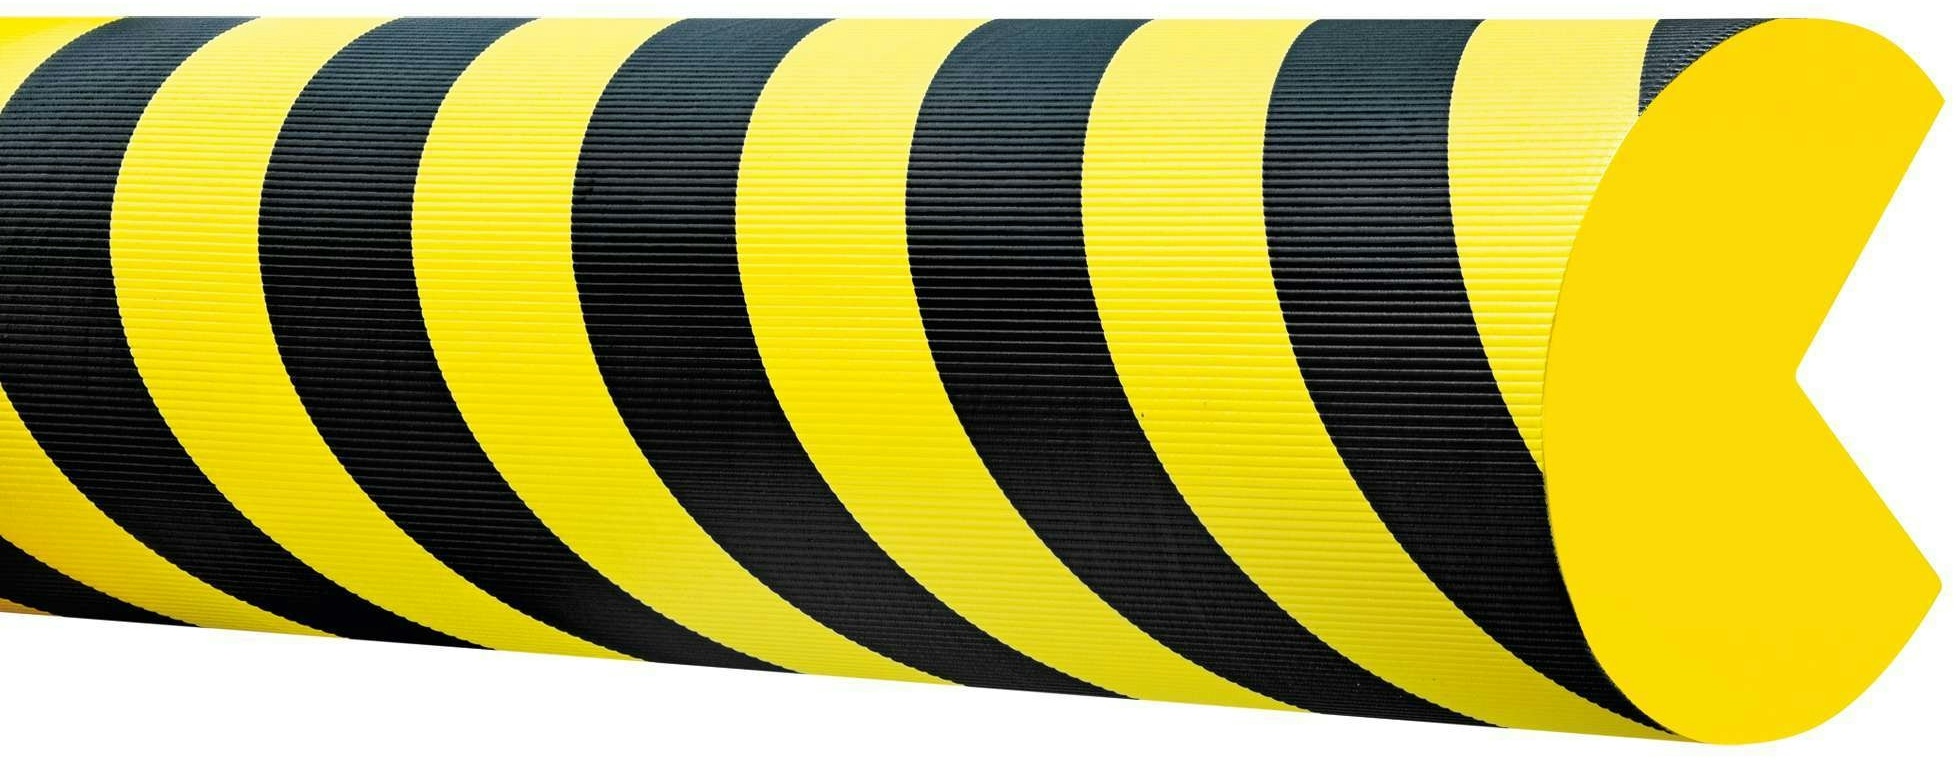 PROREGAL Prall- & Kantenschutz aus hochwertigem EVAC-Schaum | Geeignet für den Innenbereich | LxØ  100x10cm | Selbstklebend | Schwarz-Gelb